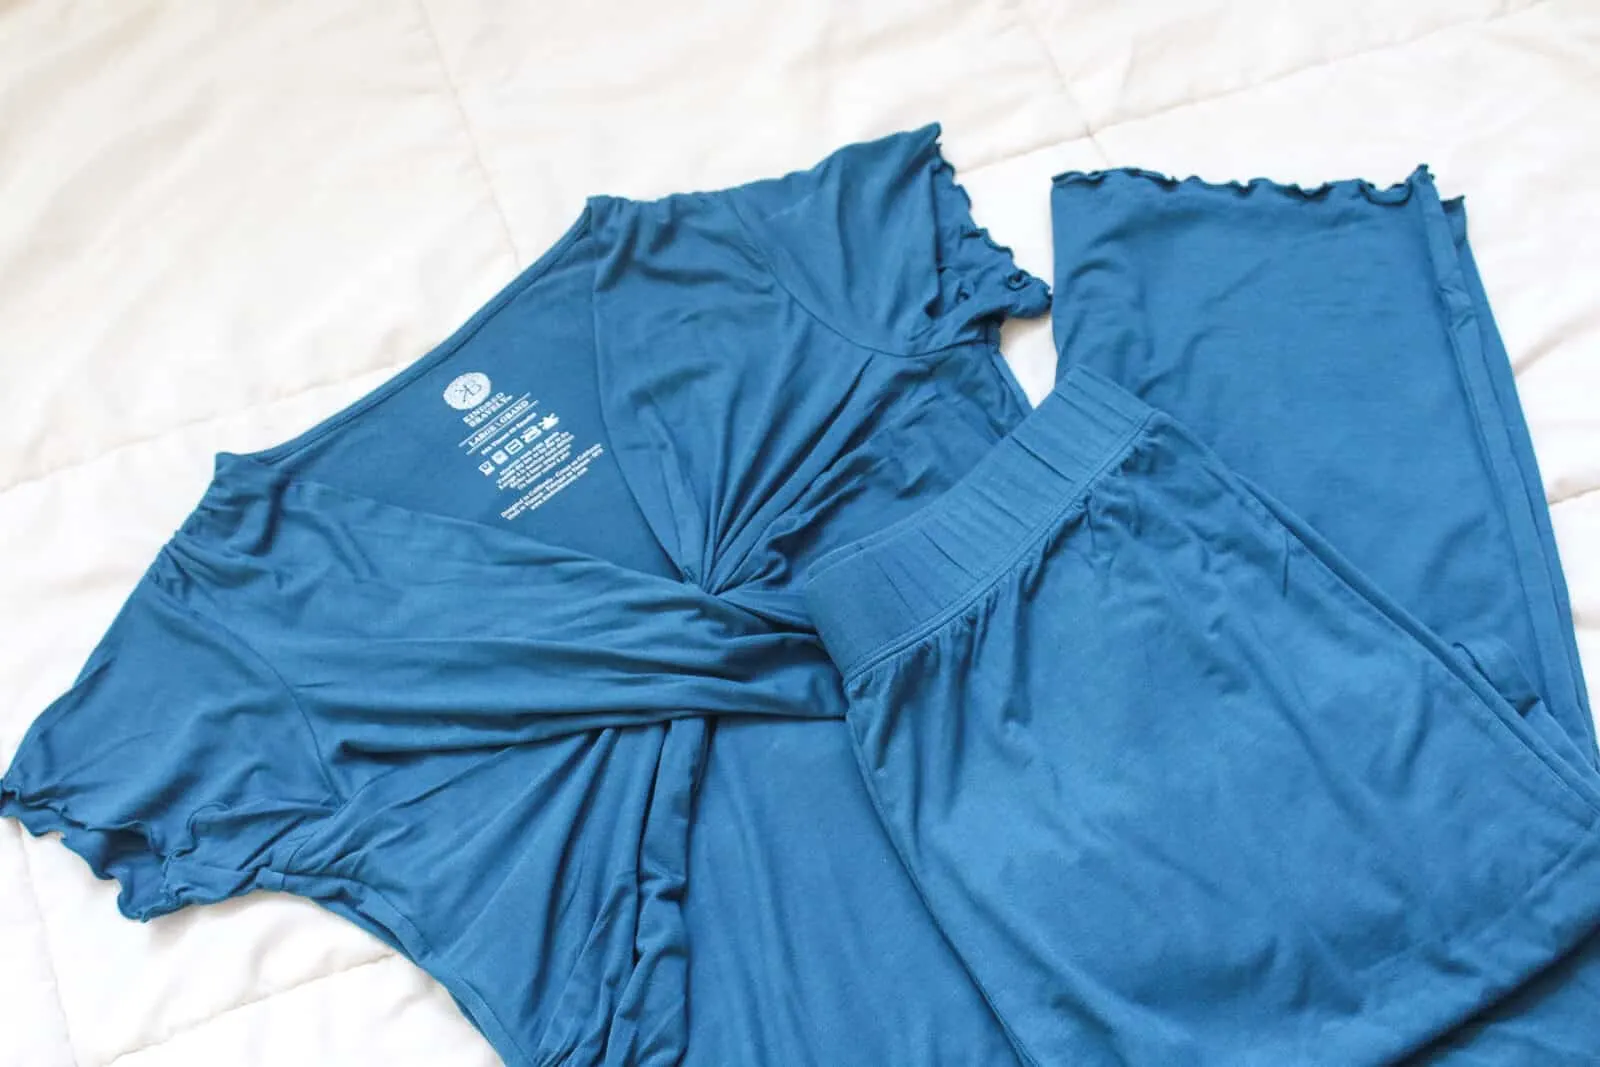 Blue postpartum clothes.